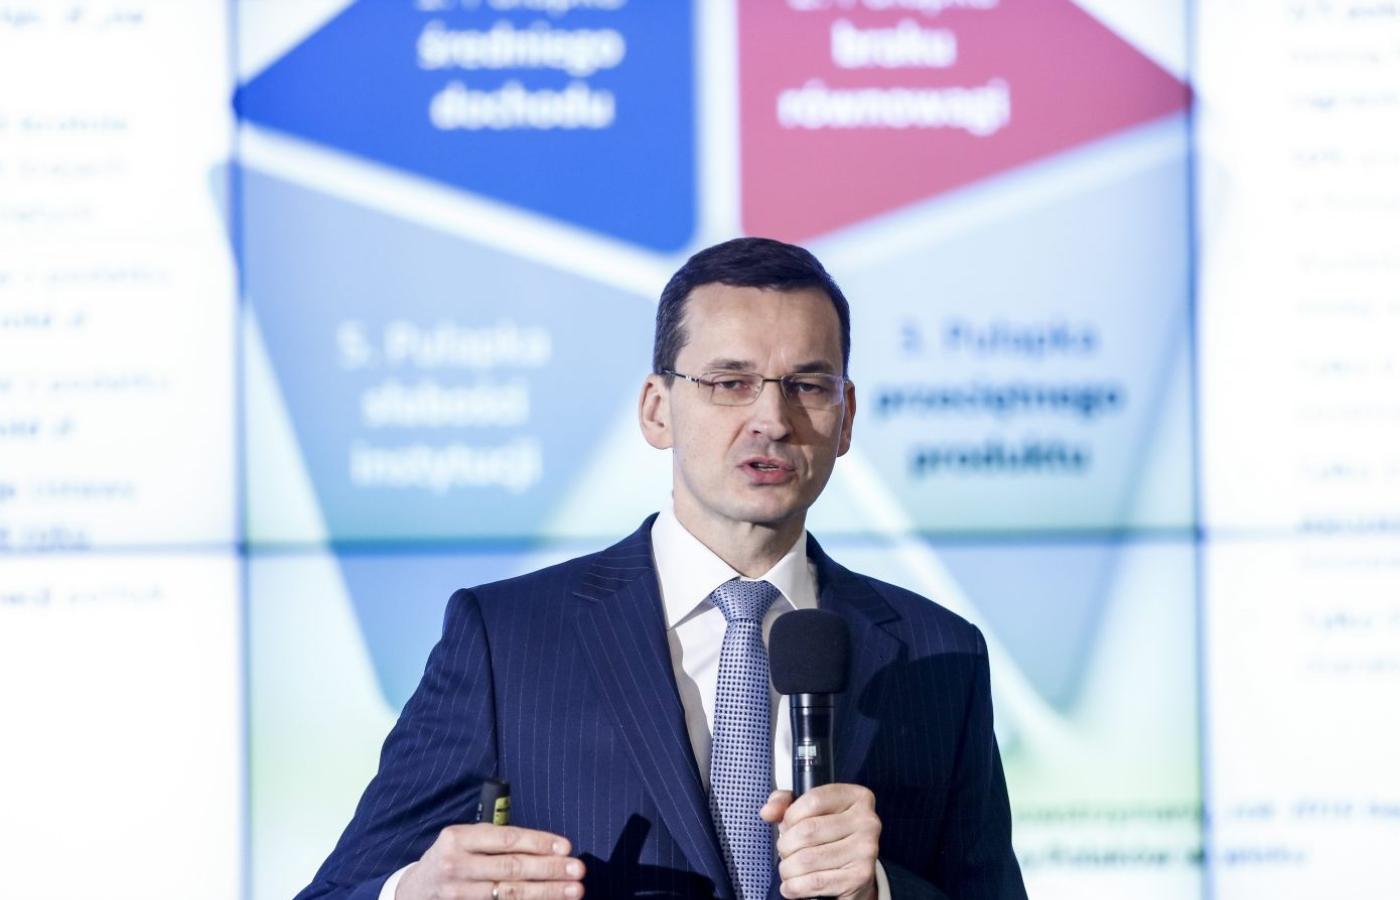 Rząd chce kierować inwestycje do przyszłościowych i oferujących dobre warunki pracy sektorów. To przekonanie jak na Polskę jednak dosyć nowatorskie.